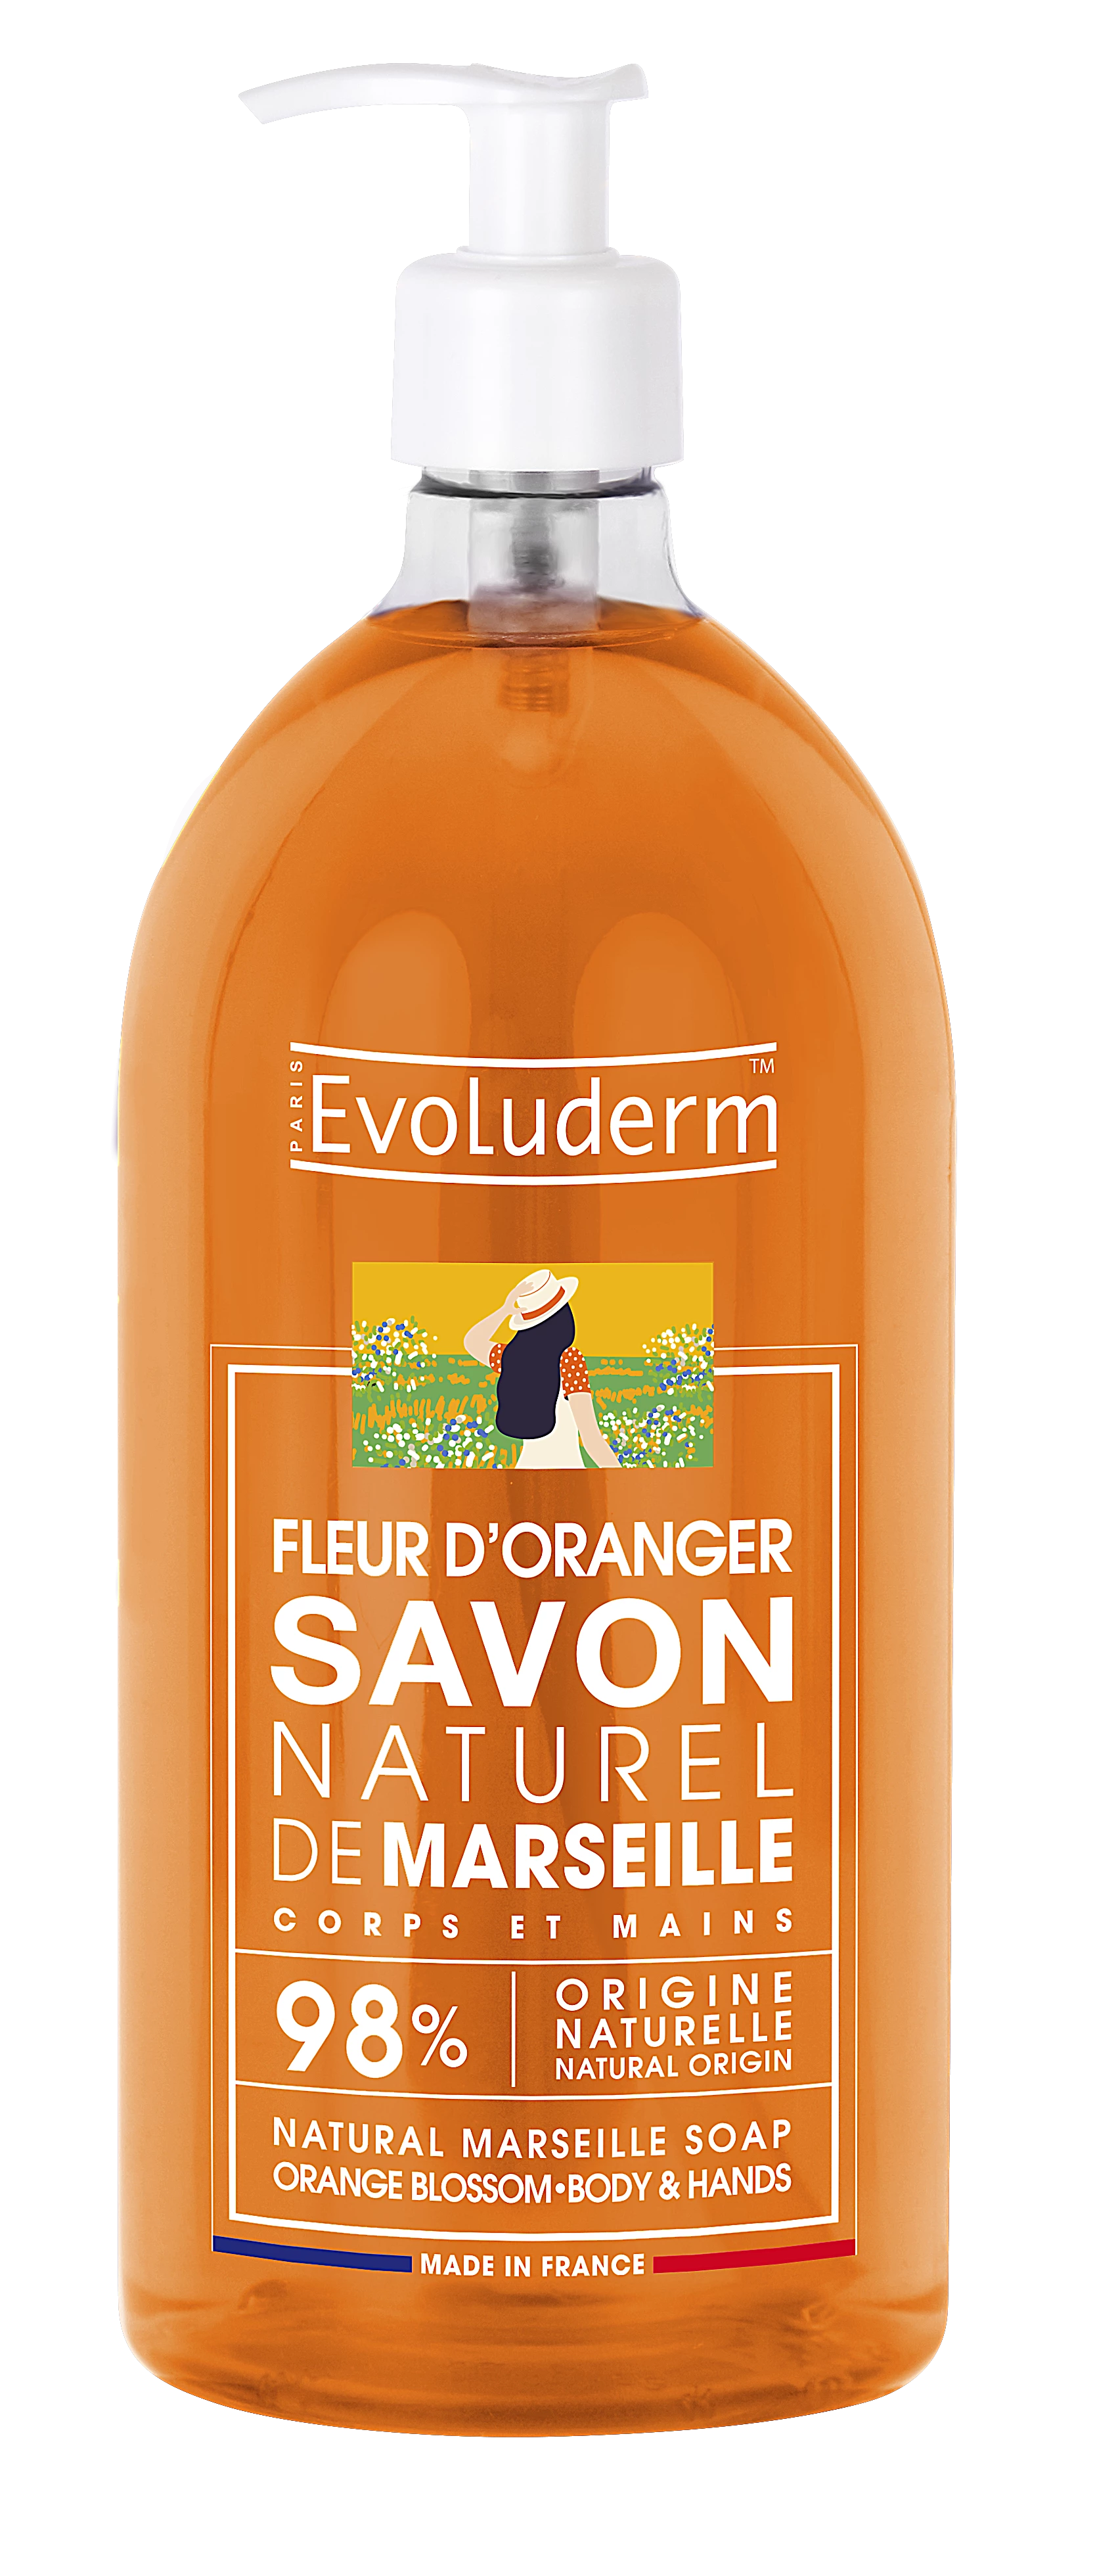 Natural Liquid Marseille Soap Orange Blossom, 1L - EVOLUDERM